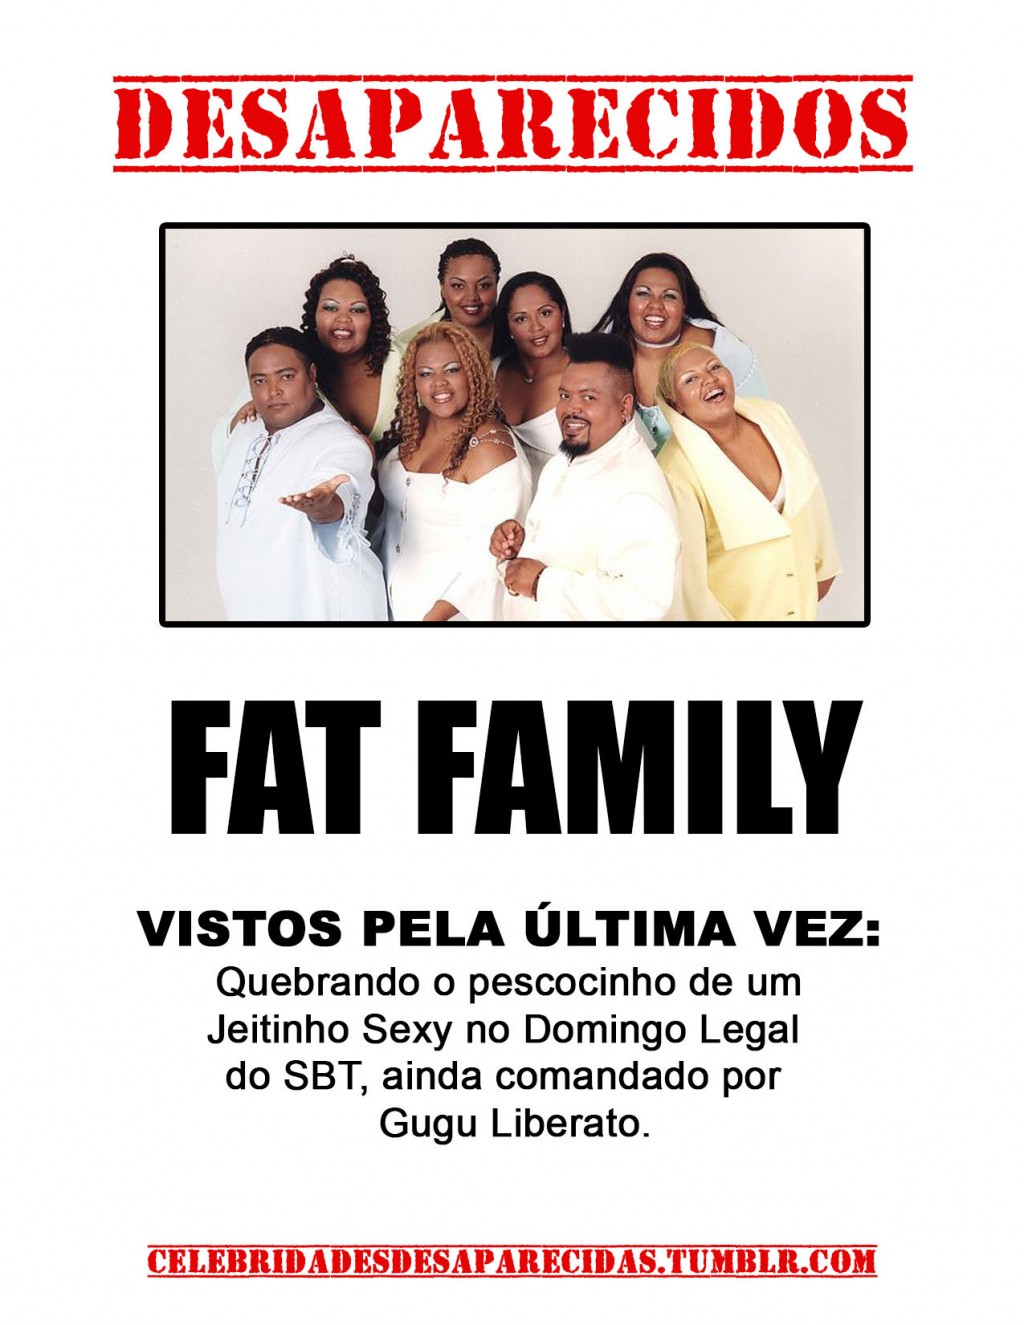 fat family